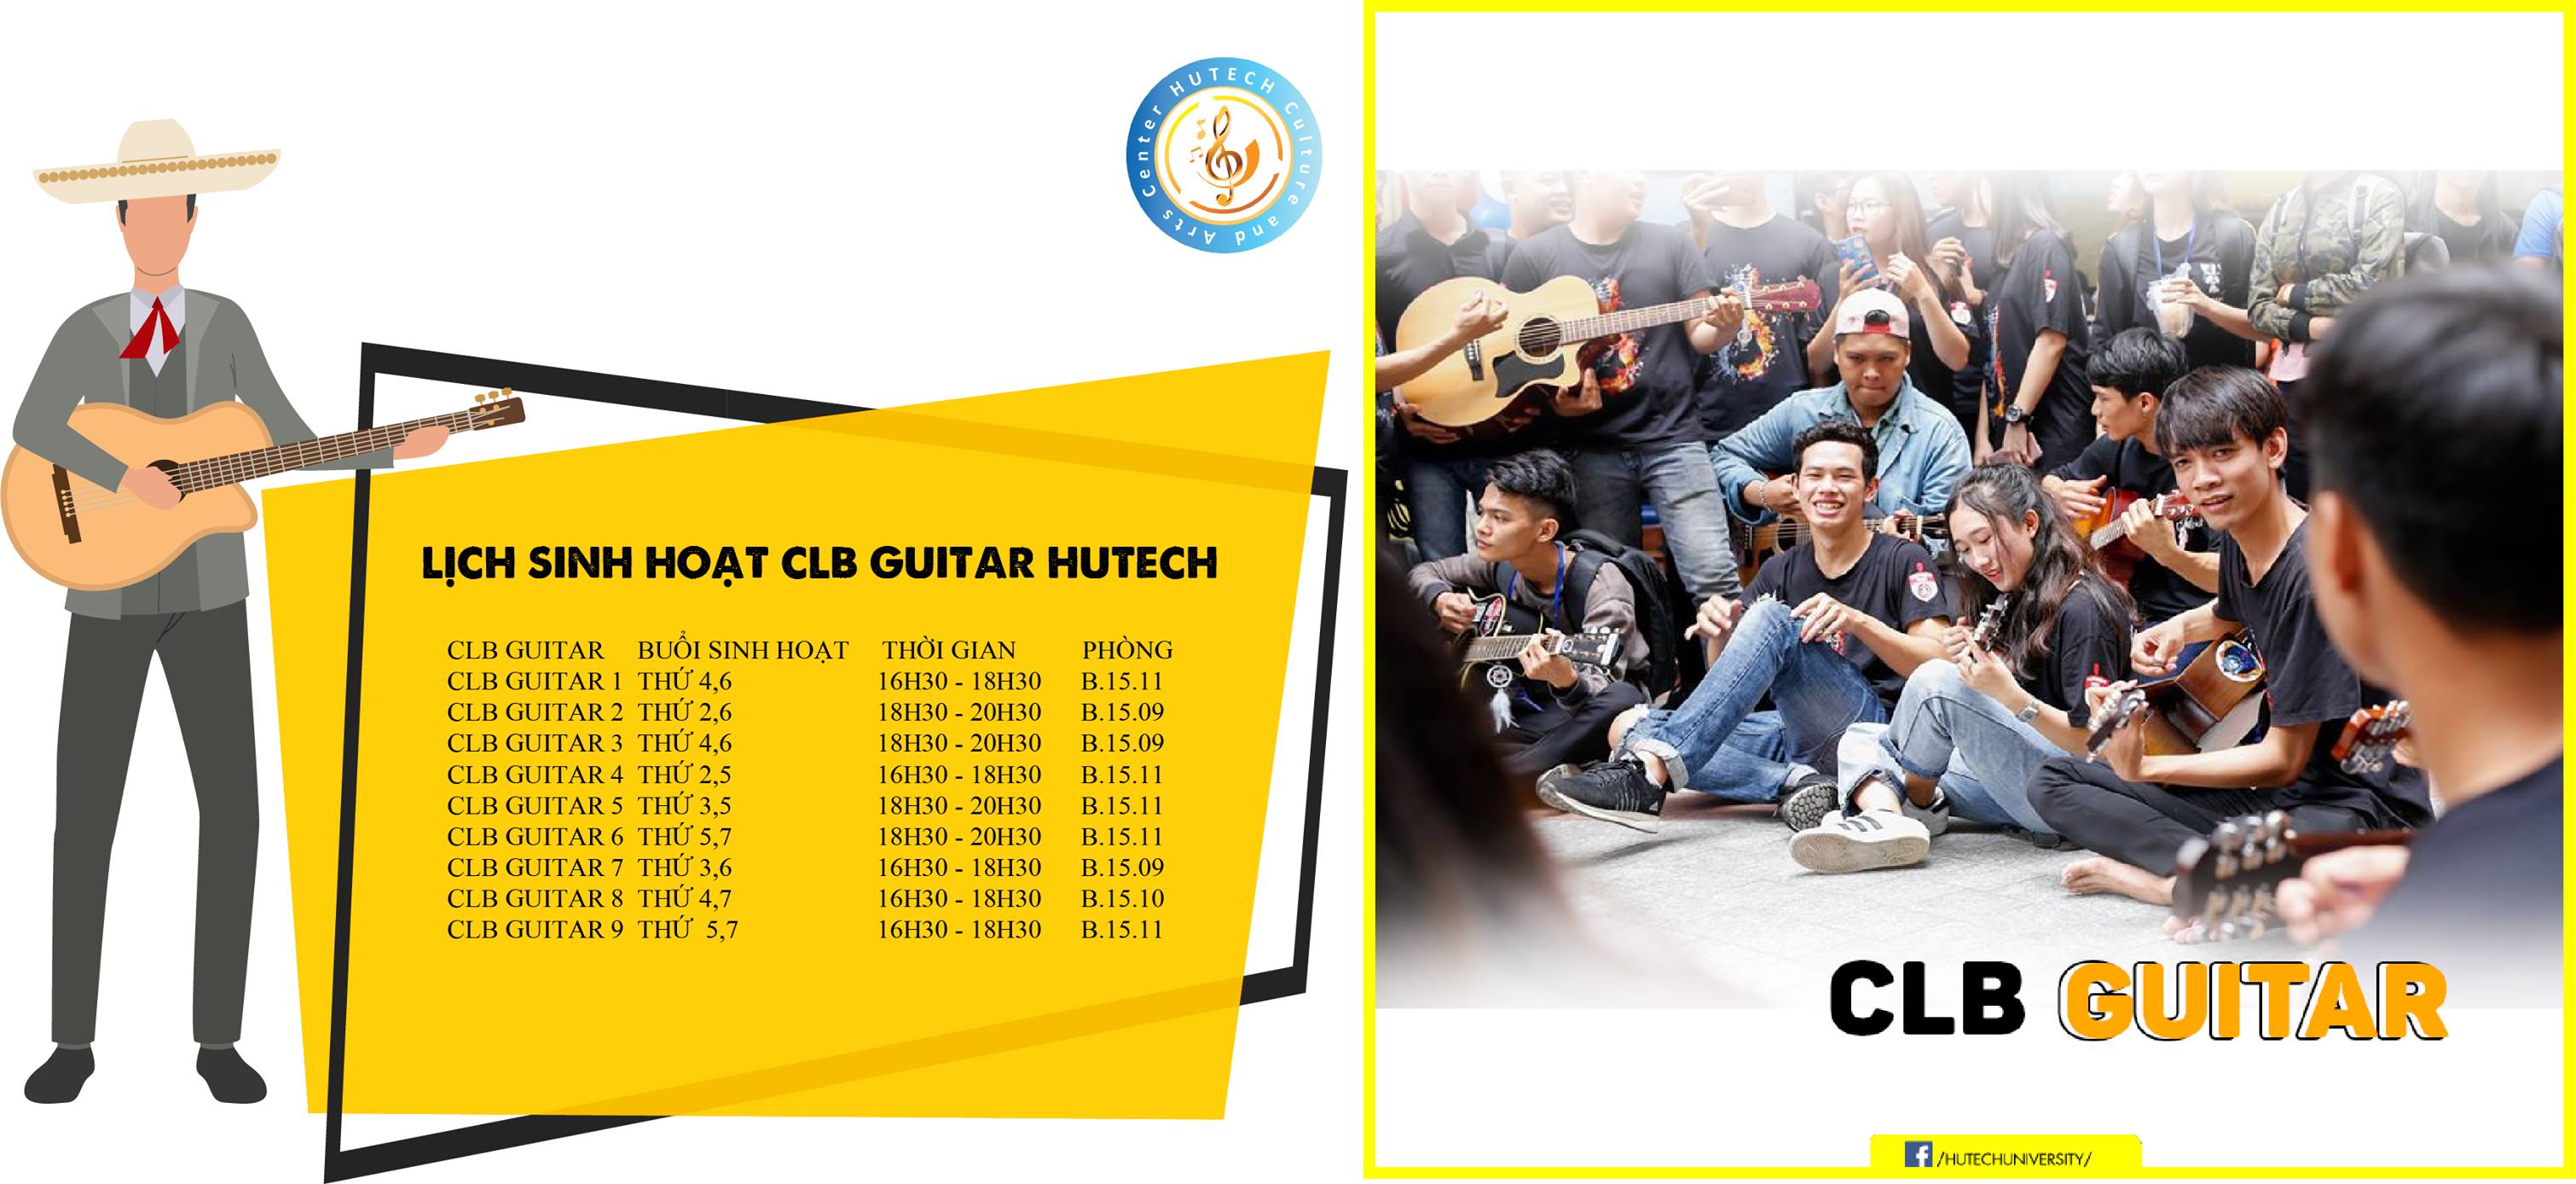 Lịch sinh hoạt CLB Guitar HUTECH 3